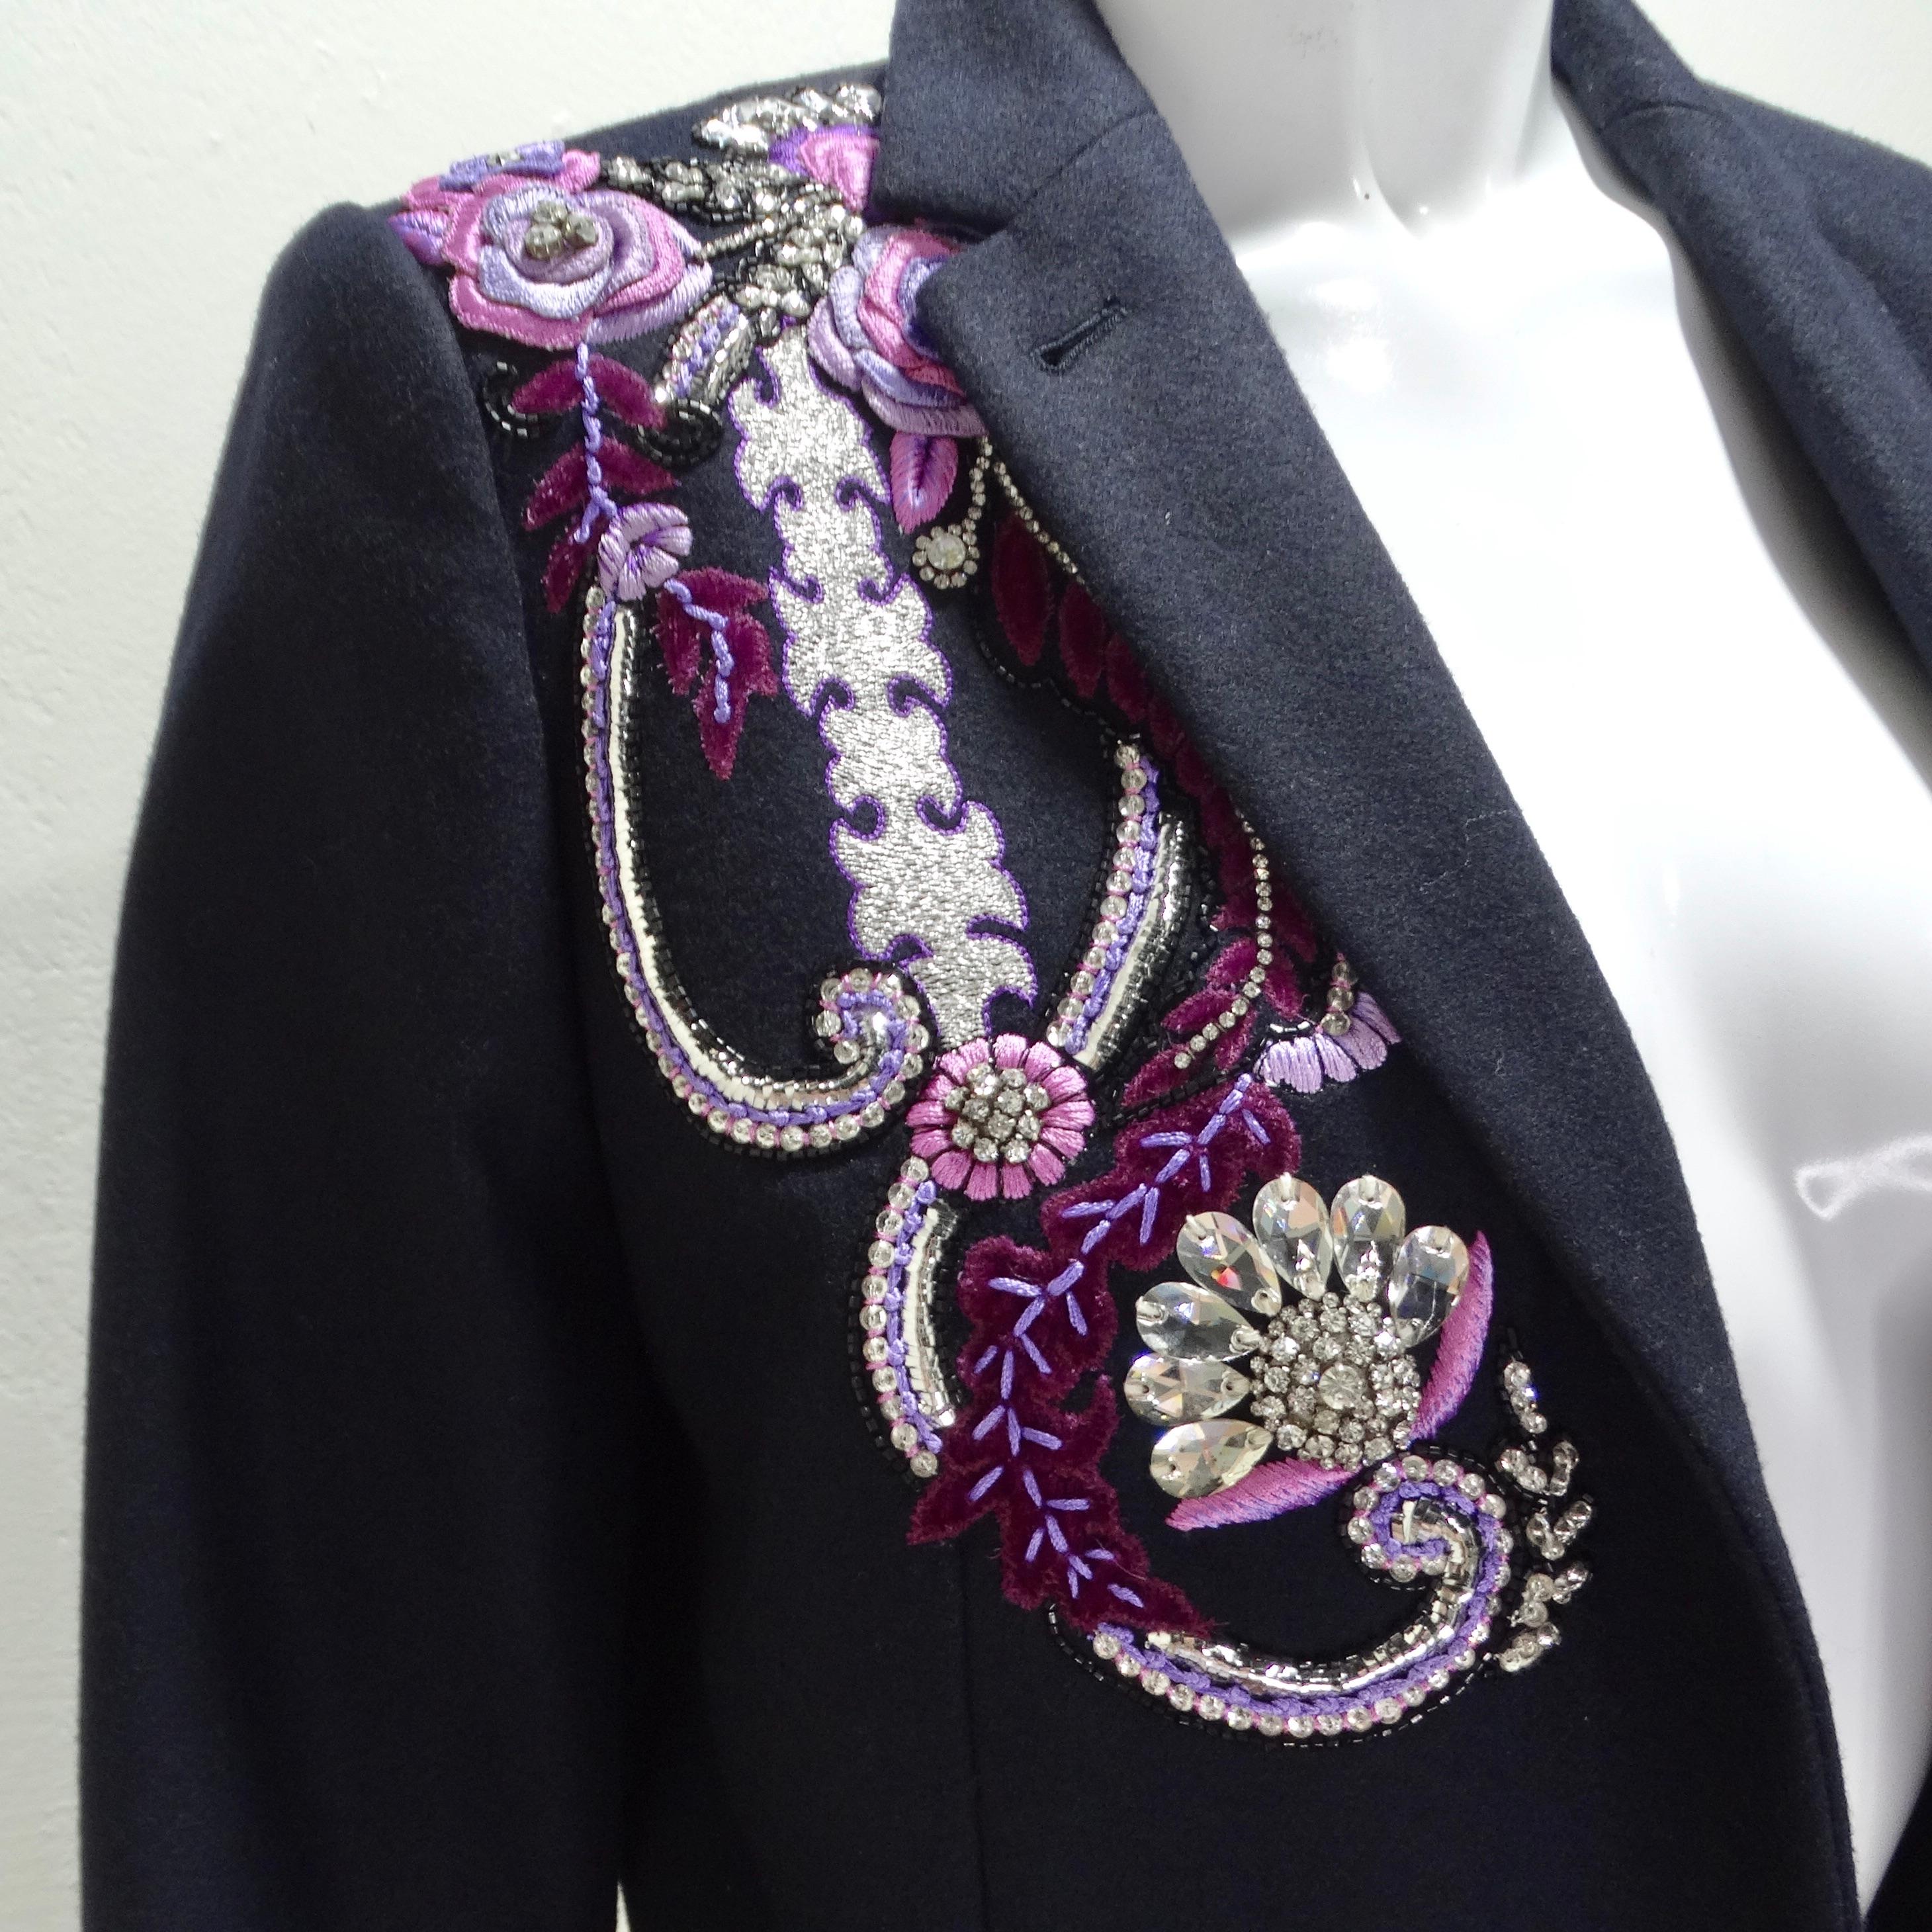 Voici l'exquis blazer brodé de cristaux de Dries Van Noten Navy, une pièce luxueuse et intemporelle, qui respire la sophistication et le style. Fabrice en tissu bleu marine classique, ce blazer est orné d'une broderie paisley fantaisiste sur